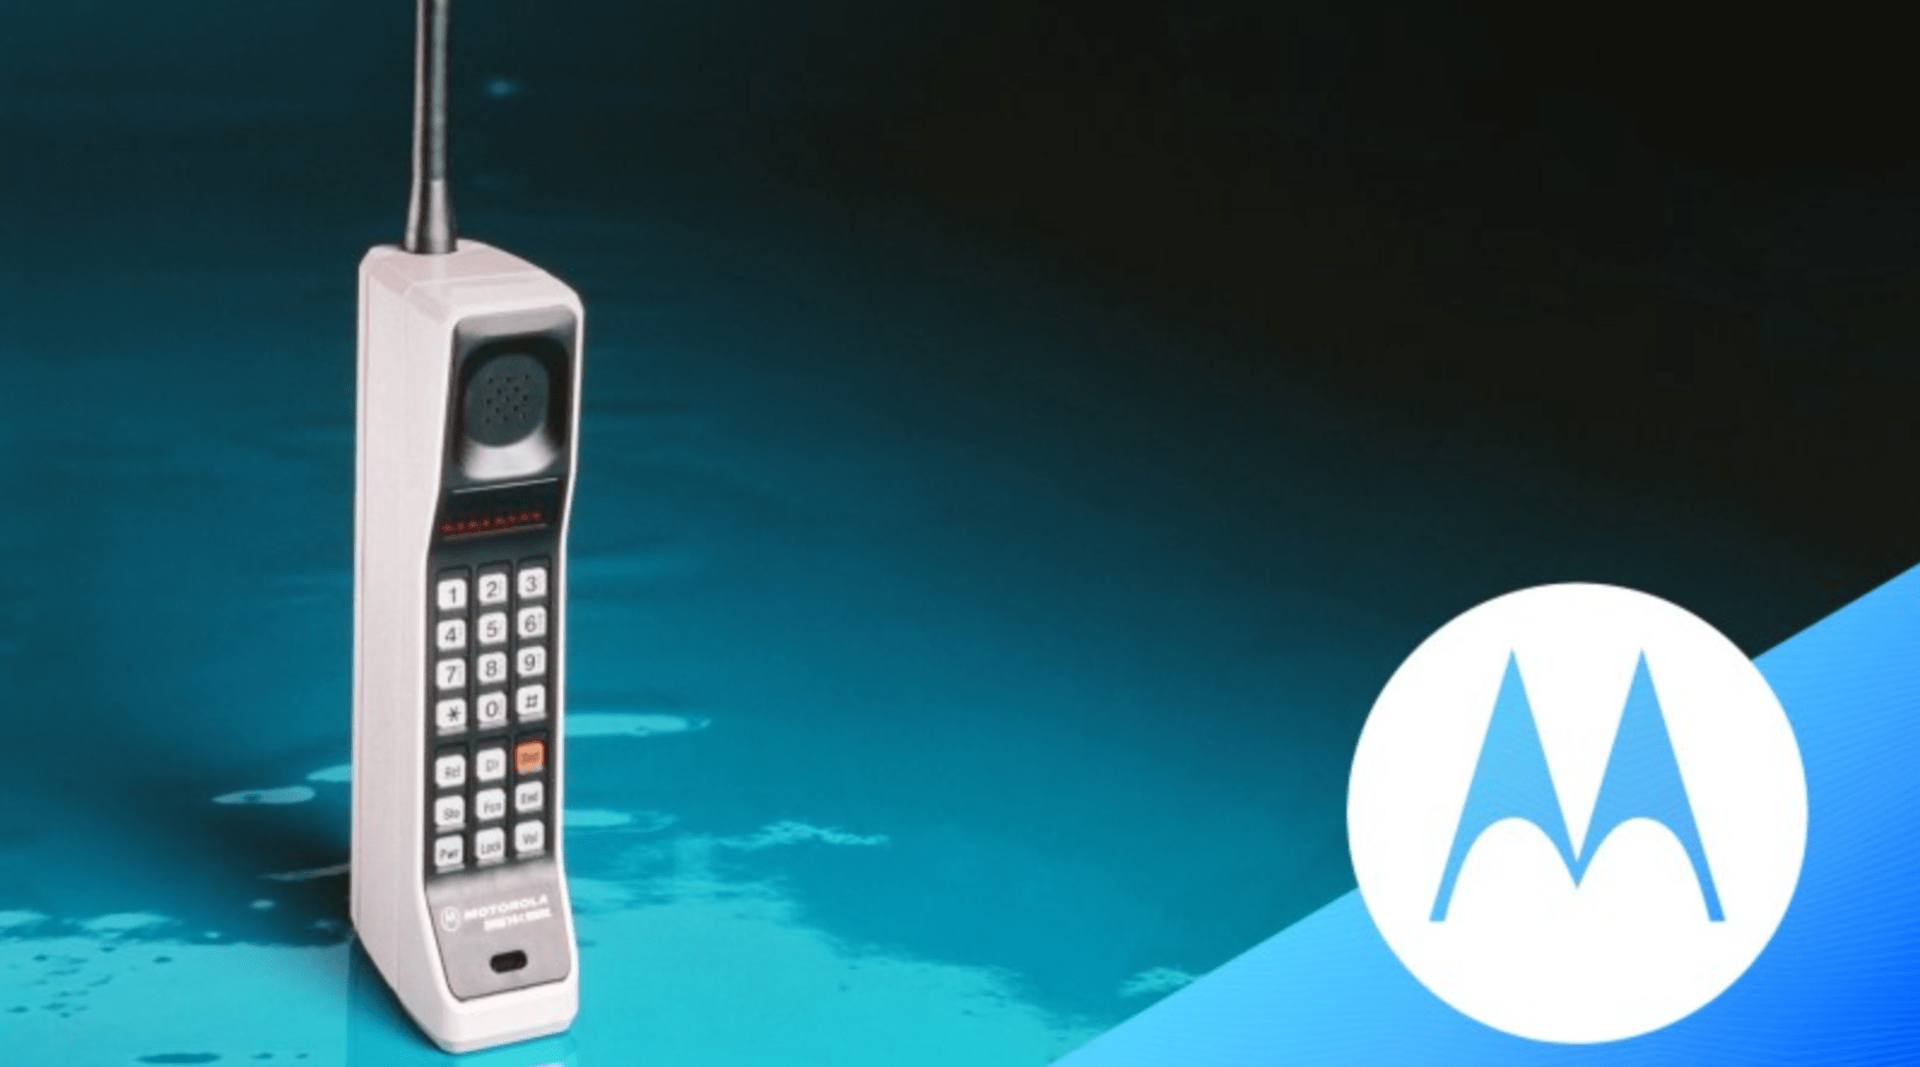 První mobilní telefon Motorola DynaTAC